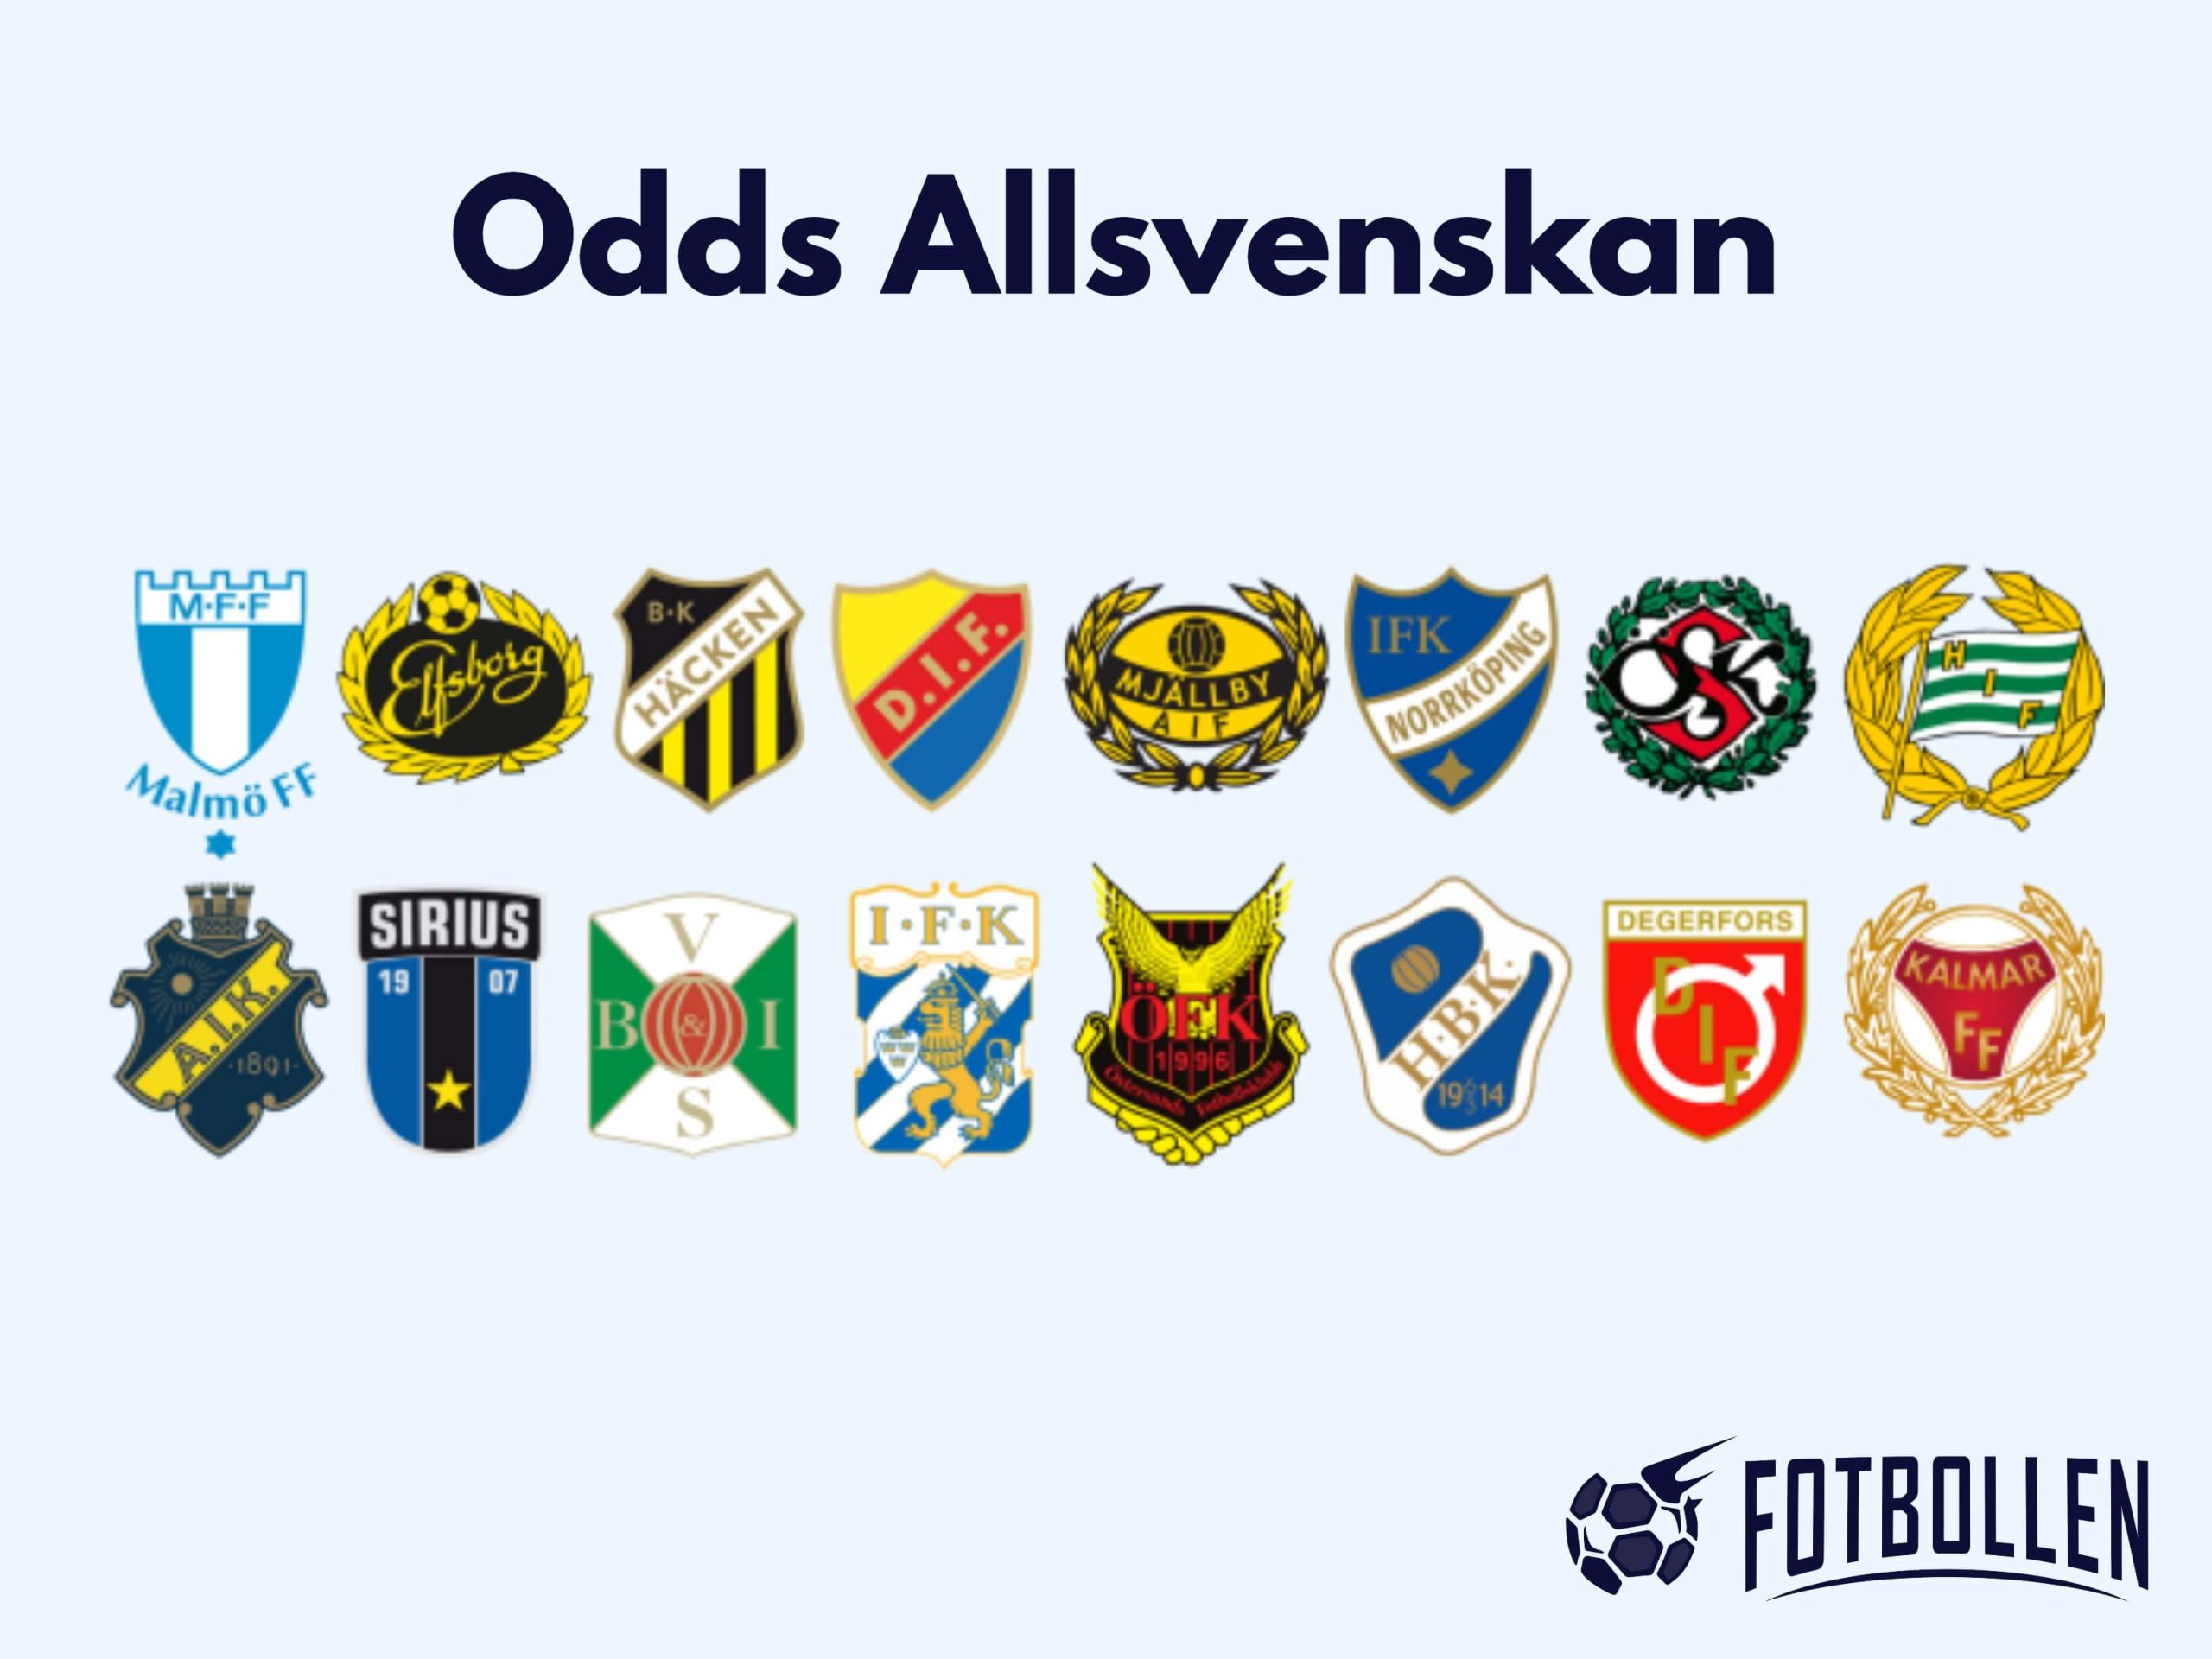 Odds Allsvenskan